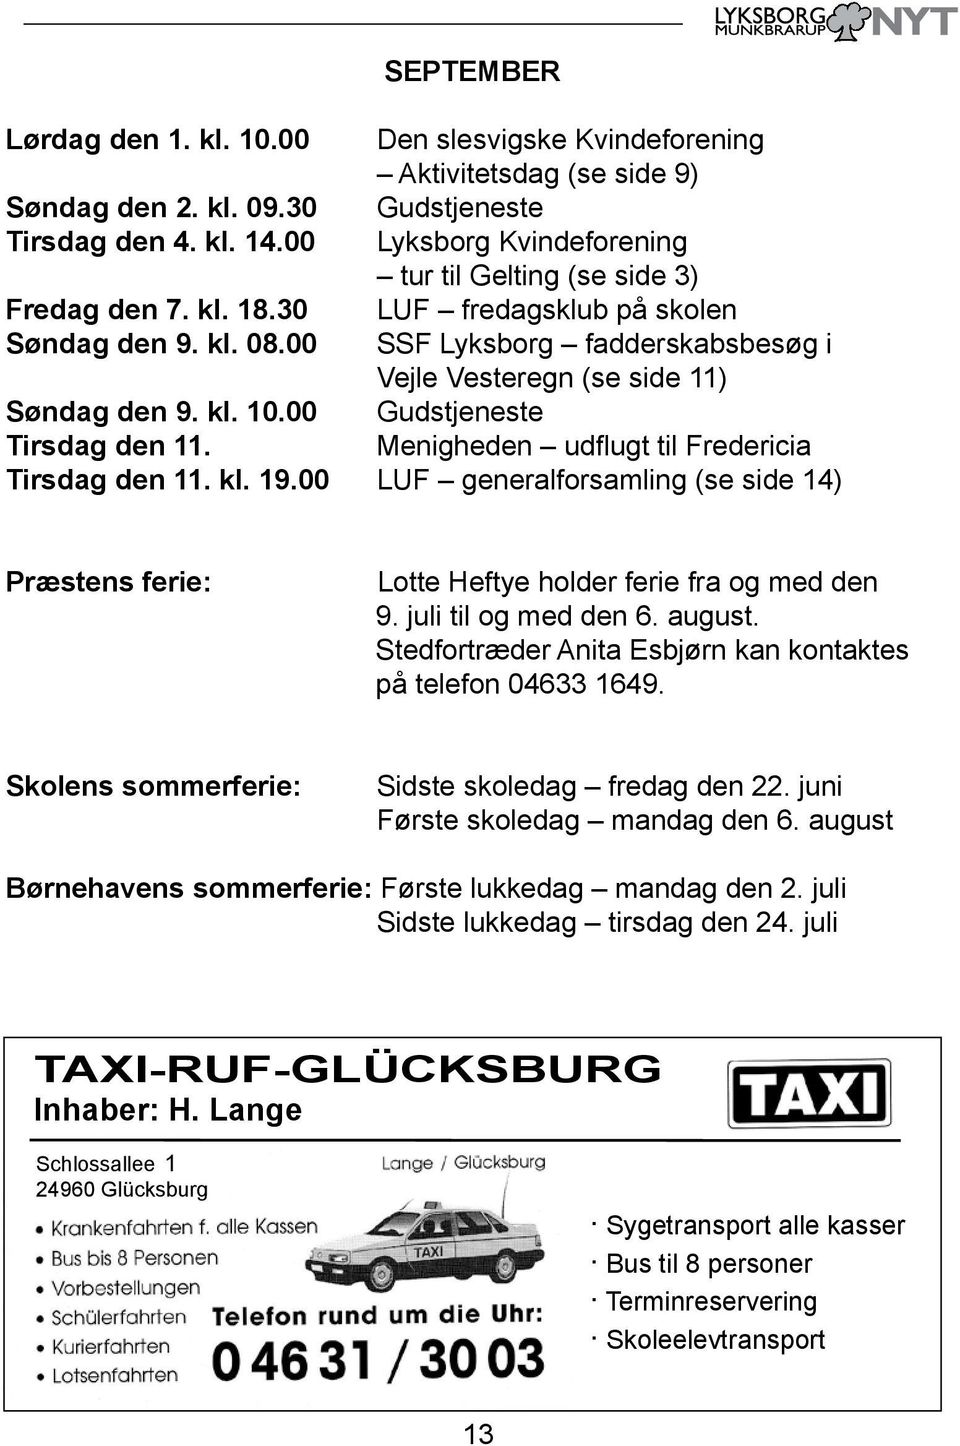 00 SSF Lyksborg fadderskabsbesøg i Vejle Vesteregn (se side 11) Søndag den 9. kl. 10.00 Gudstjeneste Tirsdag den 11. Menigheden udflugt til Fredericia Tirsdag den 11. kl. 19.